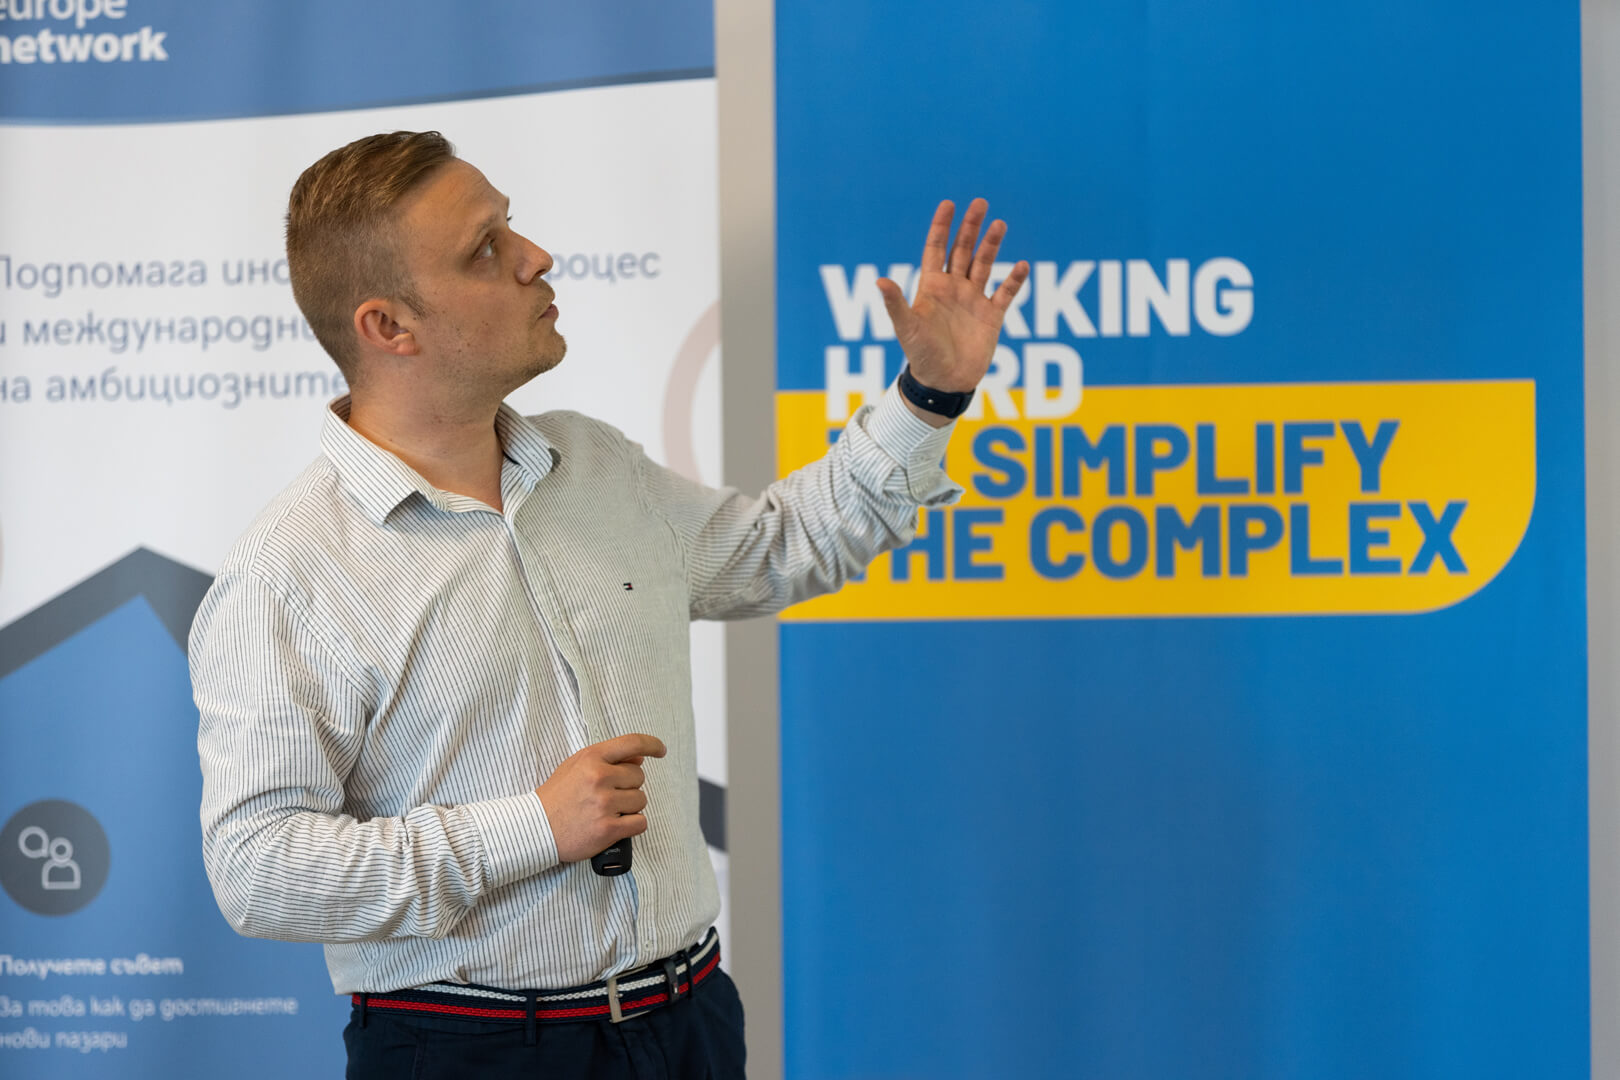 Petko Georgiev presented the Enterprise Europe Network in Burgas